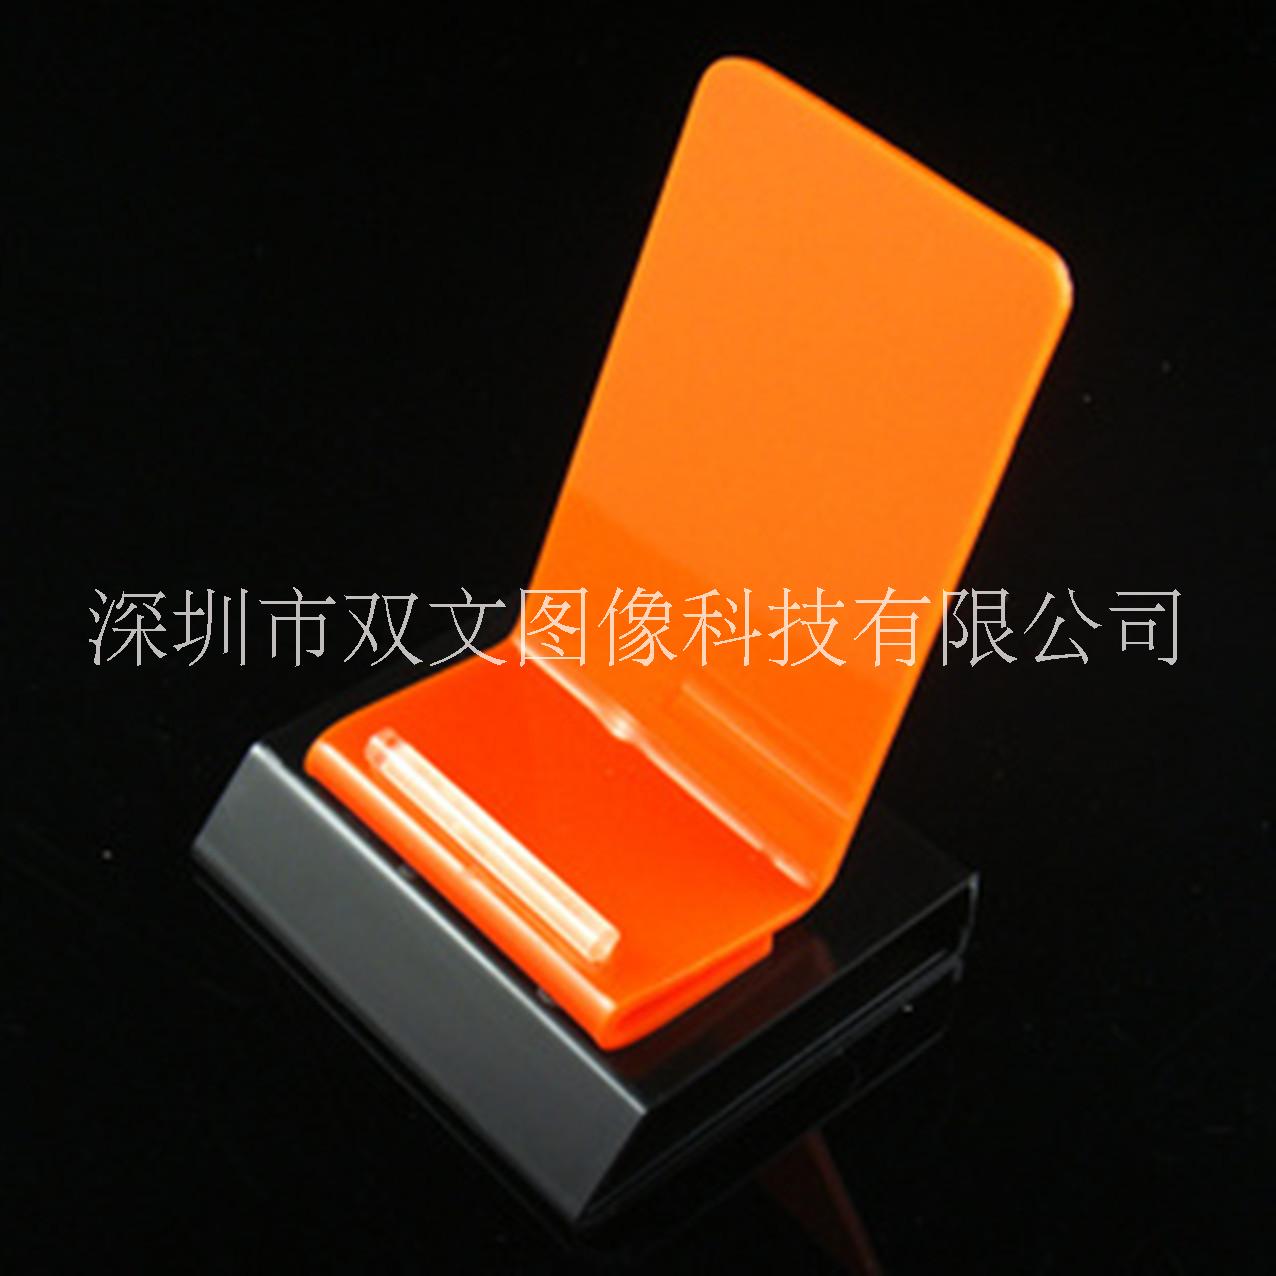 深圳有一家6年专注亚克力UV彩印制品的厂家提供亚克力印刷 、、